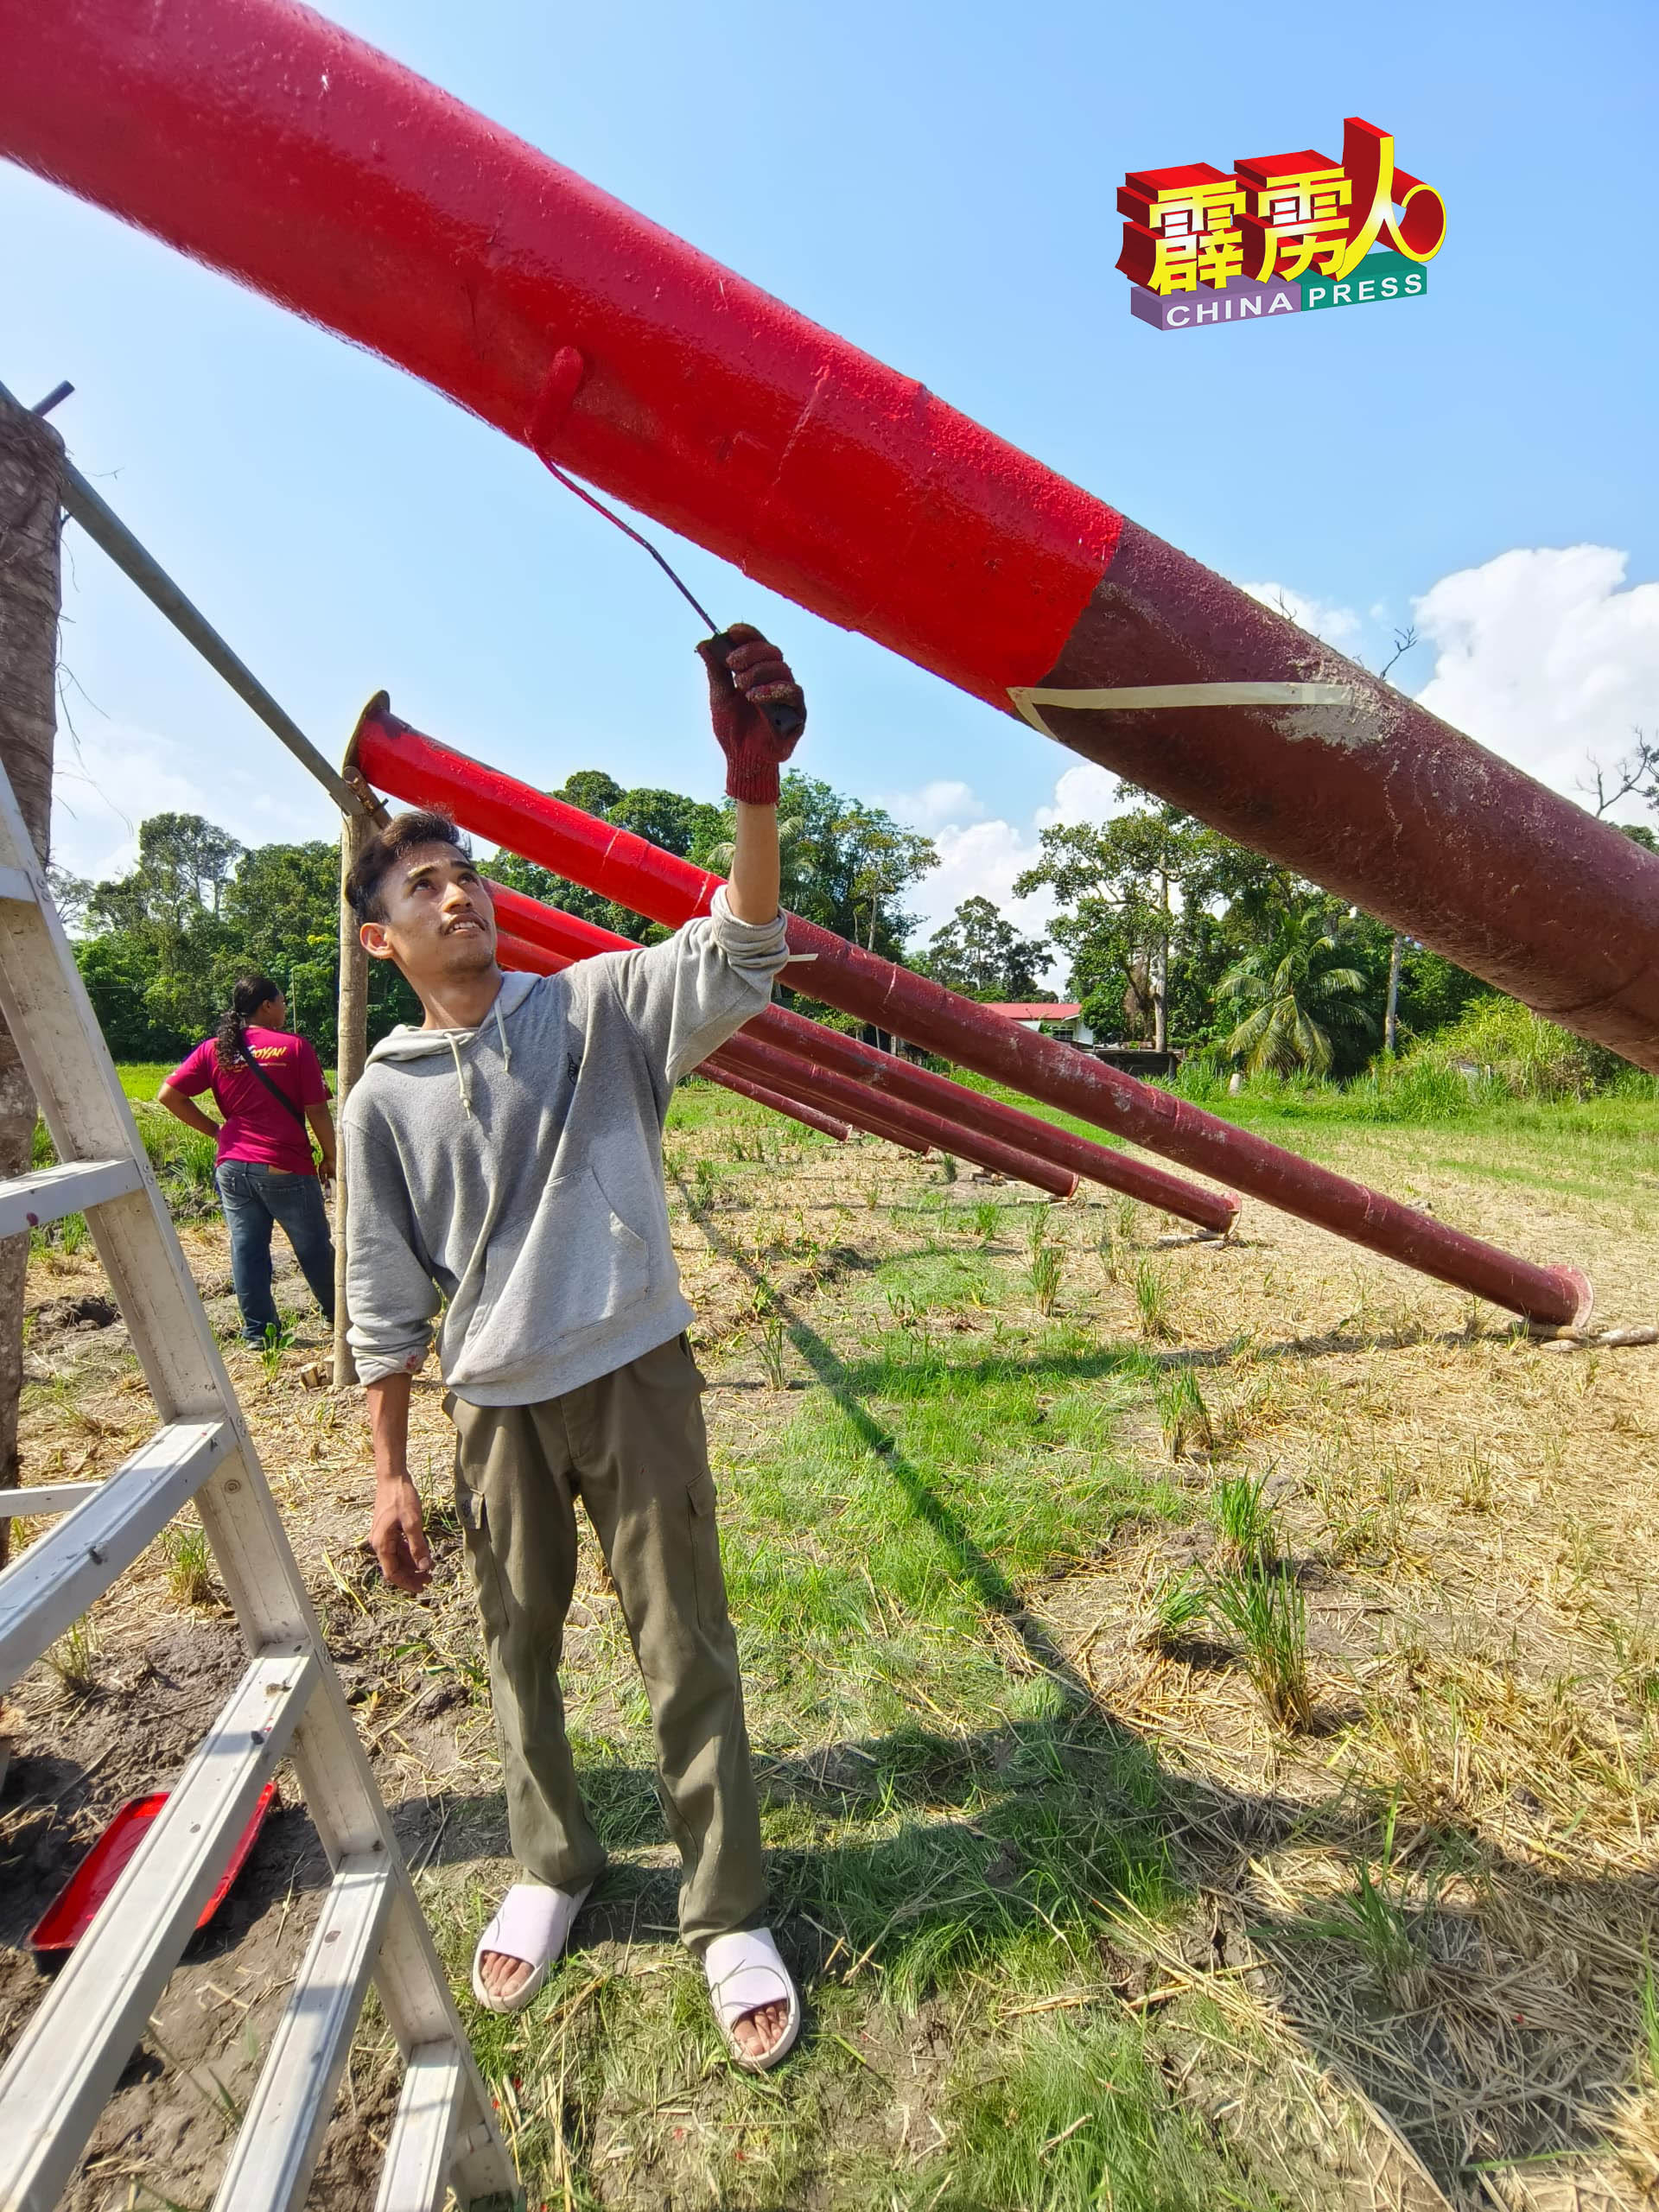 这名外号叫“光头佬“的马来村民，在烈阳下为大炮涂上红漆。